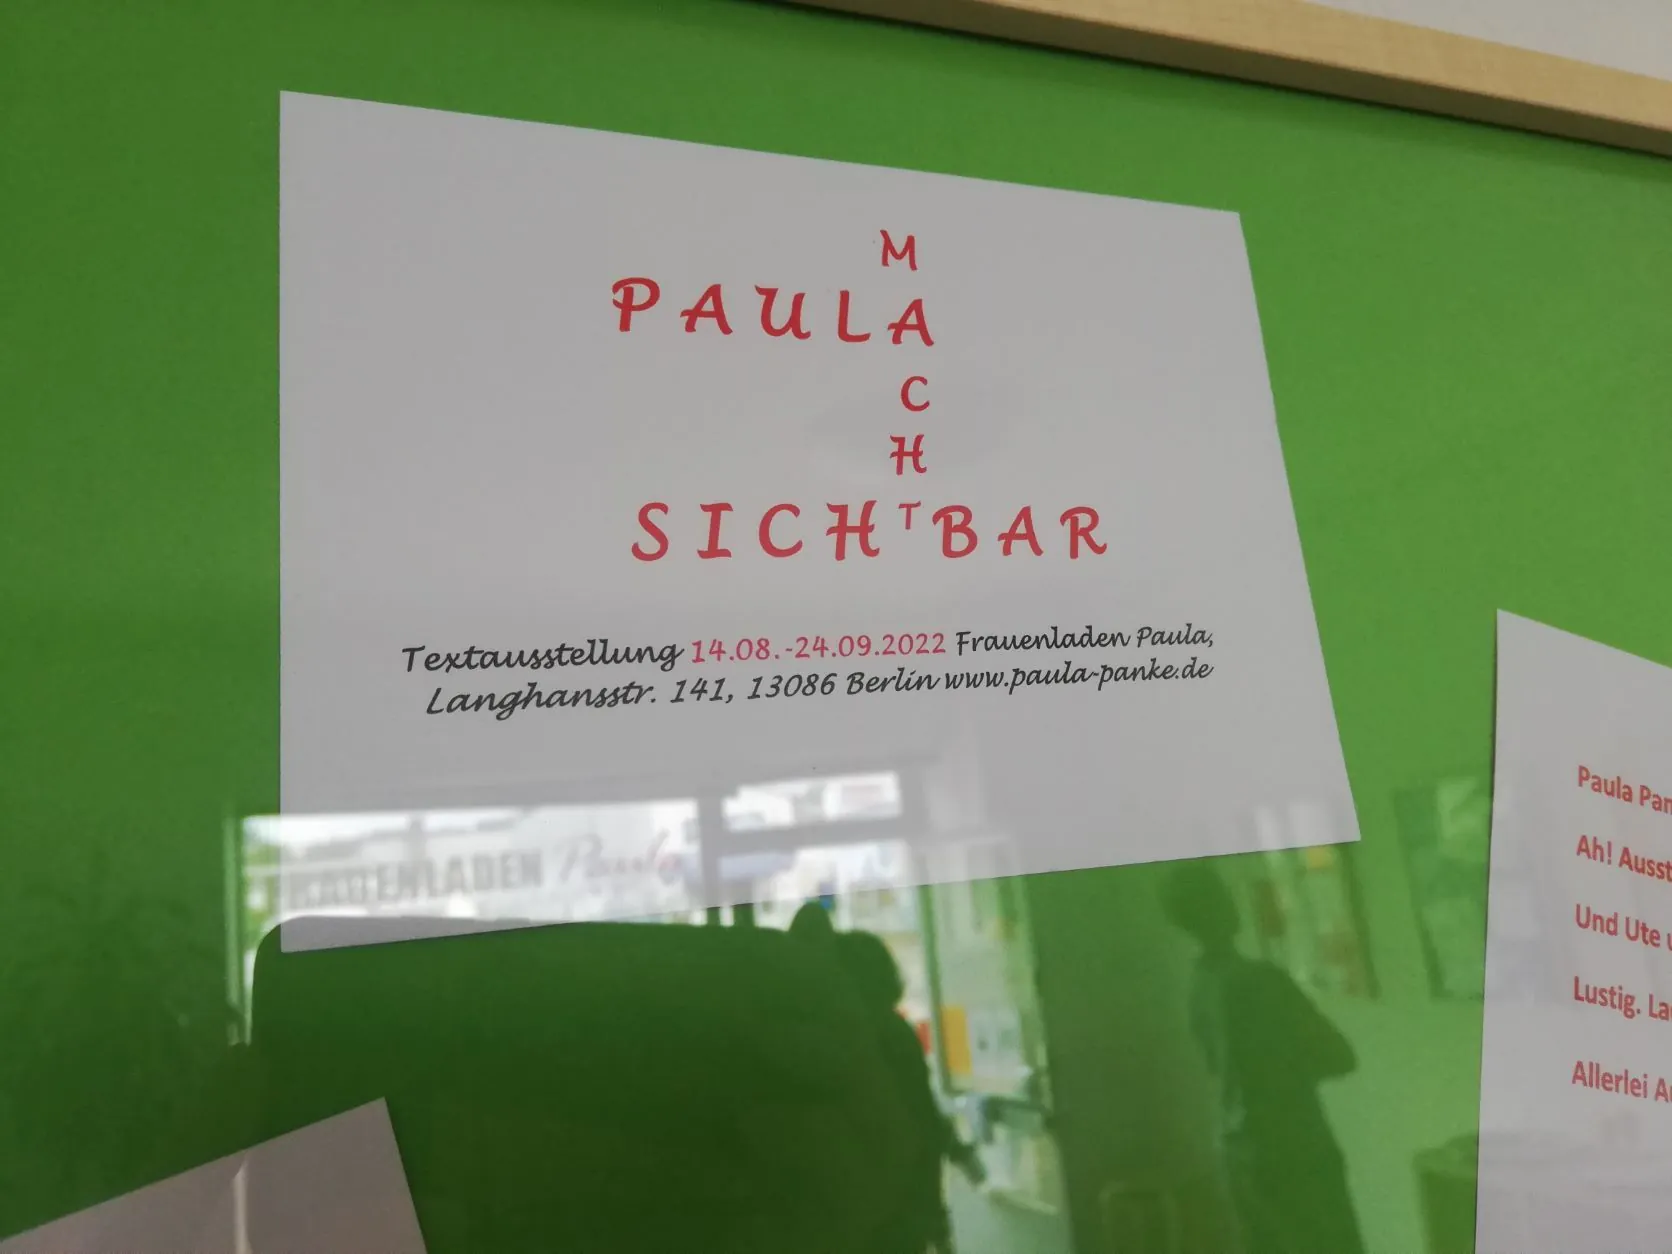 Flyer "Paula macht sichtbar" der Ausstellung "Wir teilen Geschichte(n)" im Frauenladen Weissensee